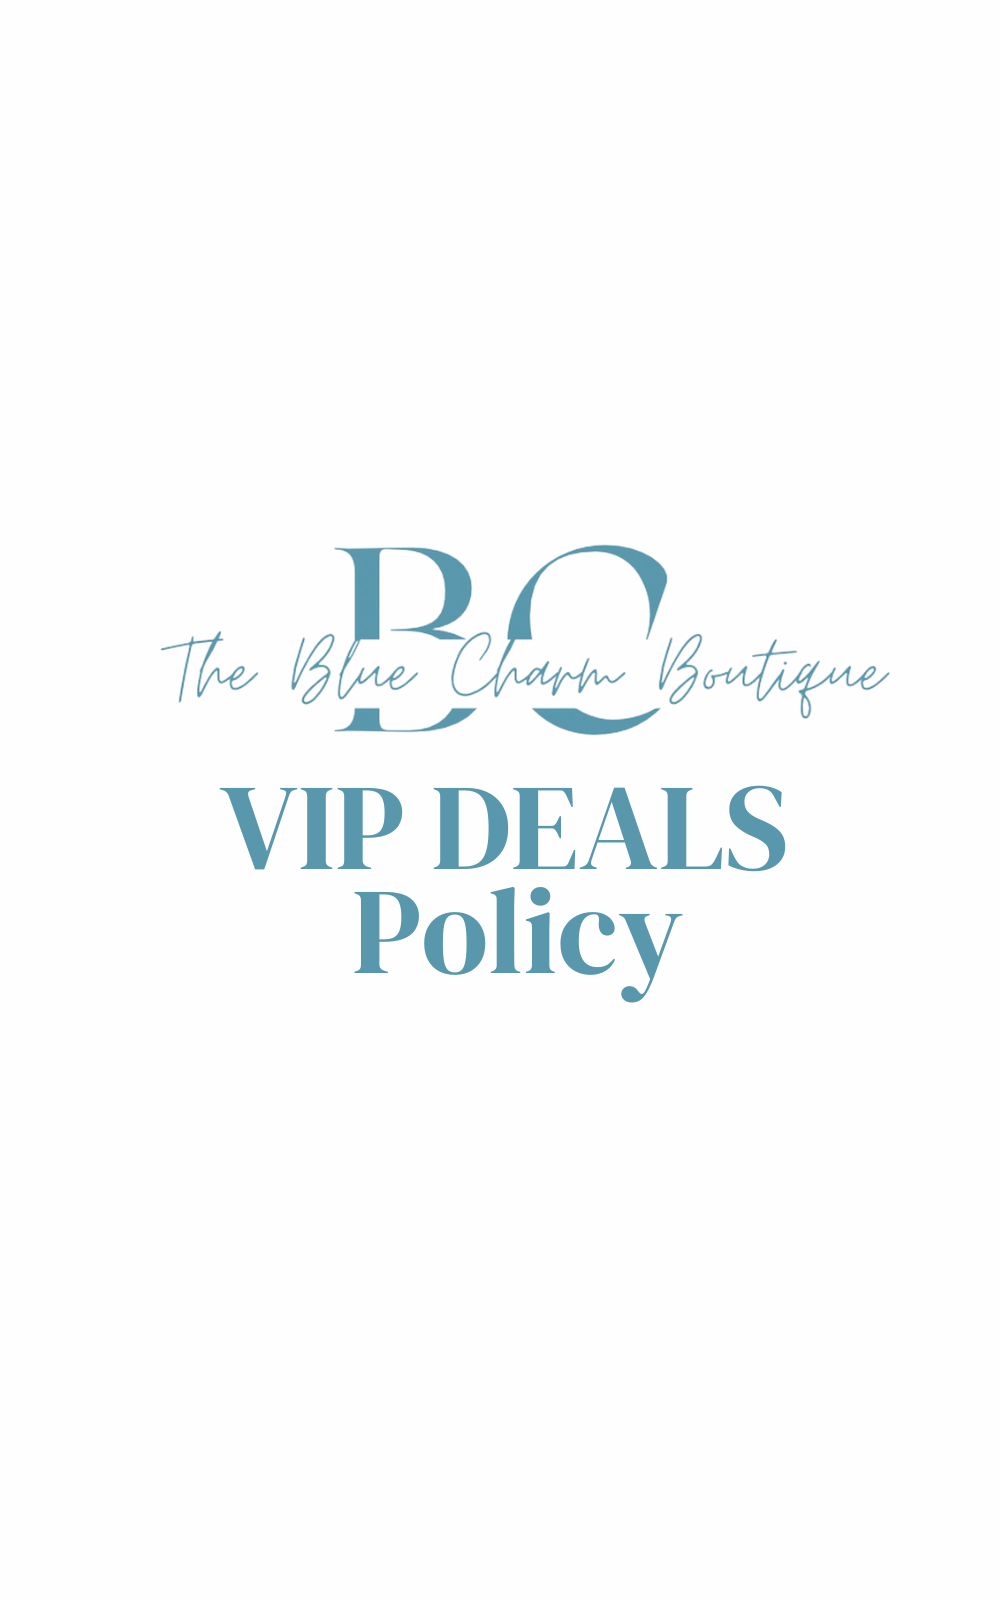 VIP Deals